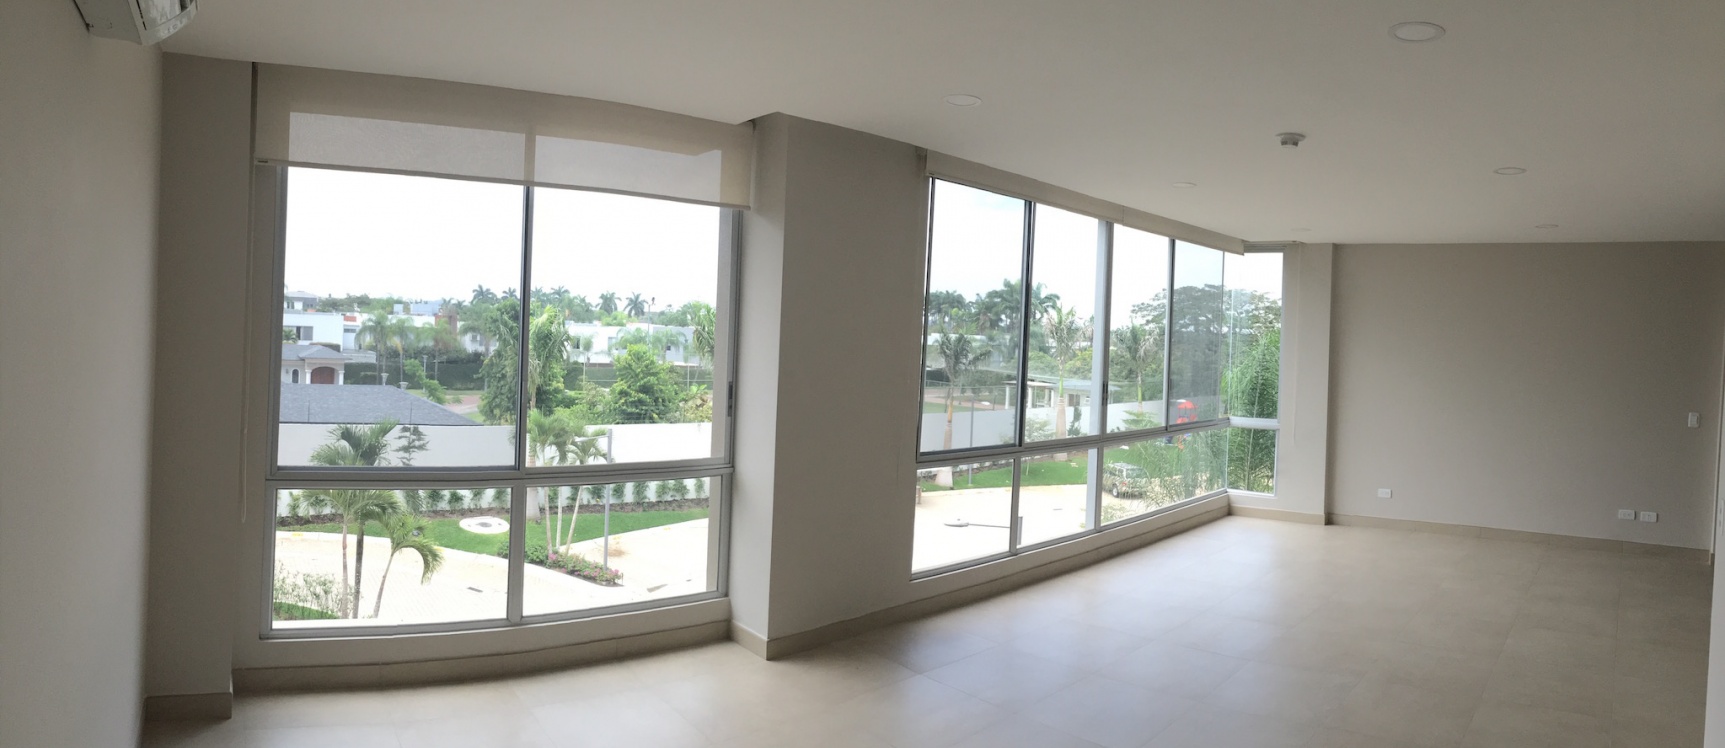 GeoBienes - Departamento en alquiler en Río Plata Samborondón - Plusvalia Guayaquil Casas de venta y alquiler Inmobiliaria Ecuador